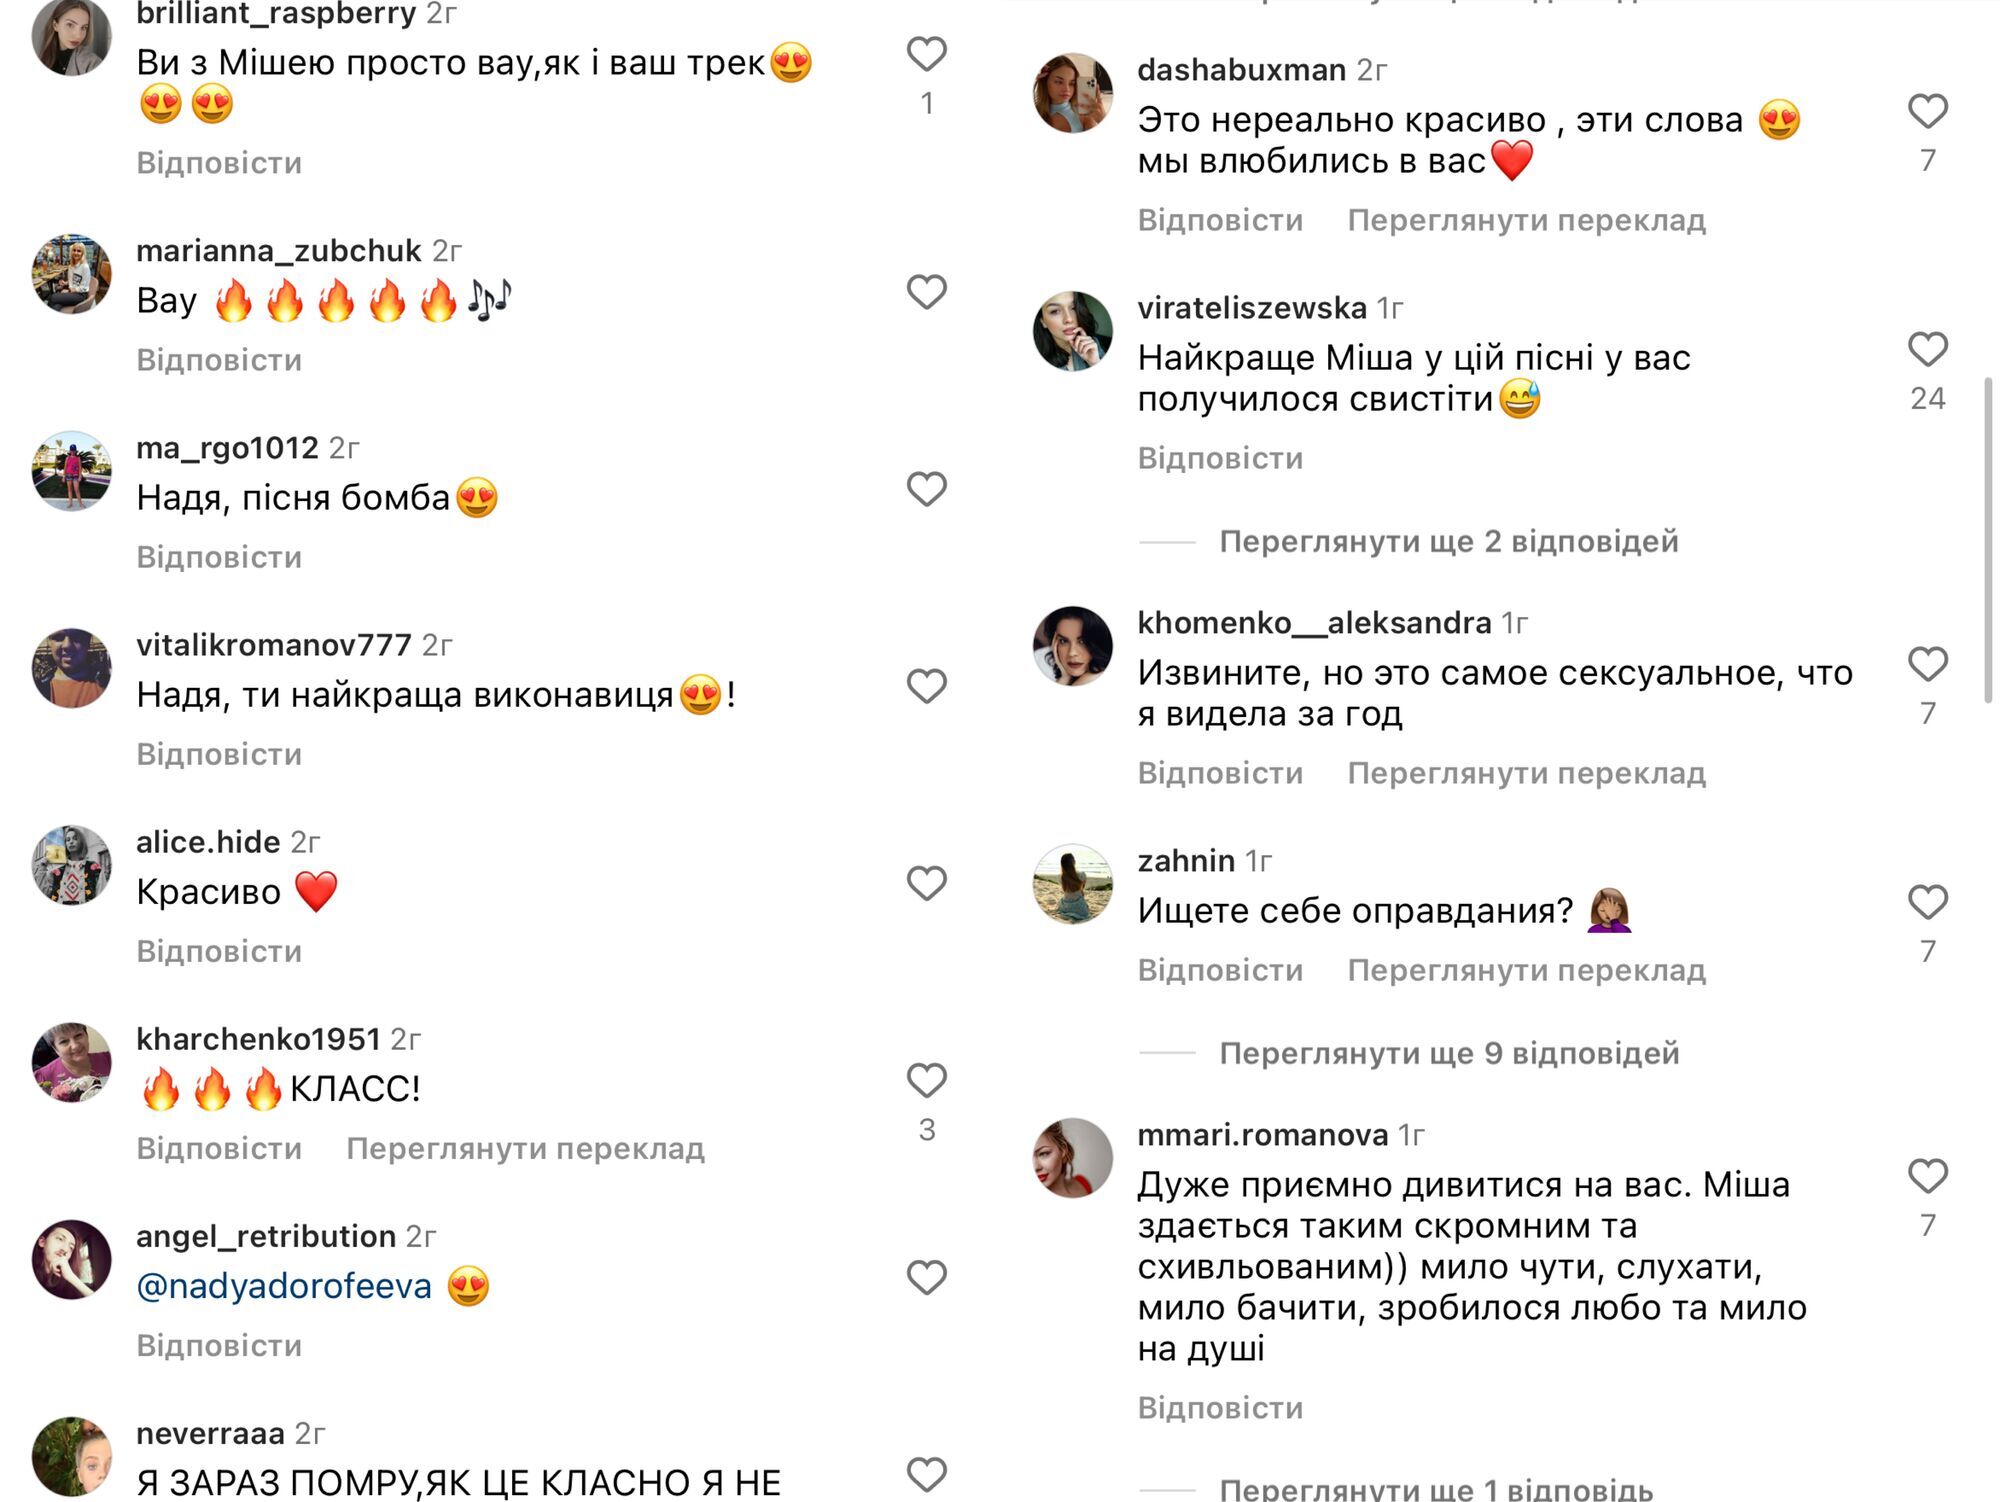 Дорофєєва та її новий бойфренд Кацурін випустили спільну пісню: щоб не зійти з розуму, маємо бути разом